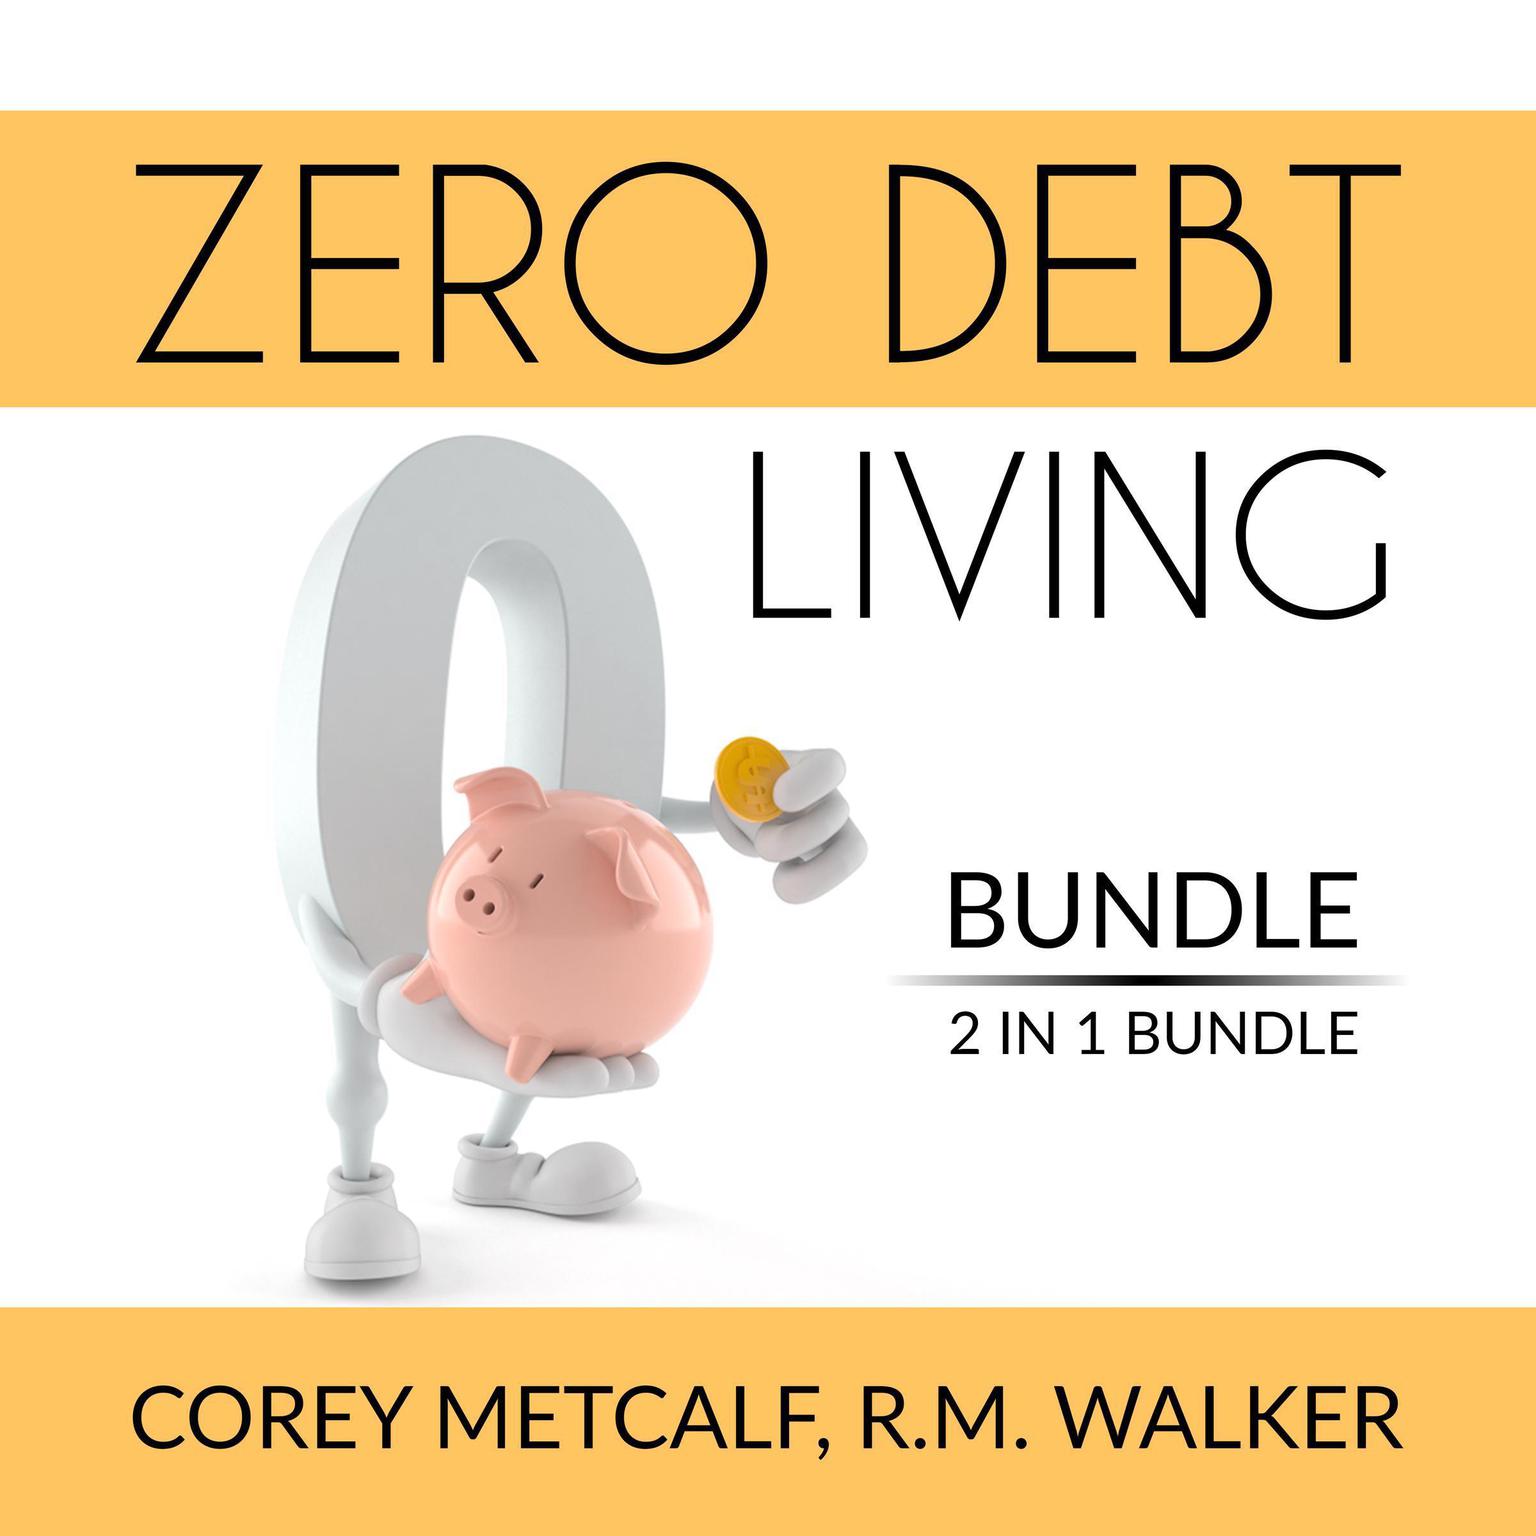 Zero Debt Living Bundle, 2 IN 1 Bundle: Debt-Free Living, How to Be Debt Free Audiobook, by Corey Metcalf